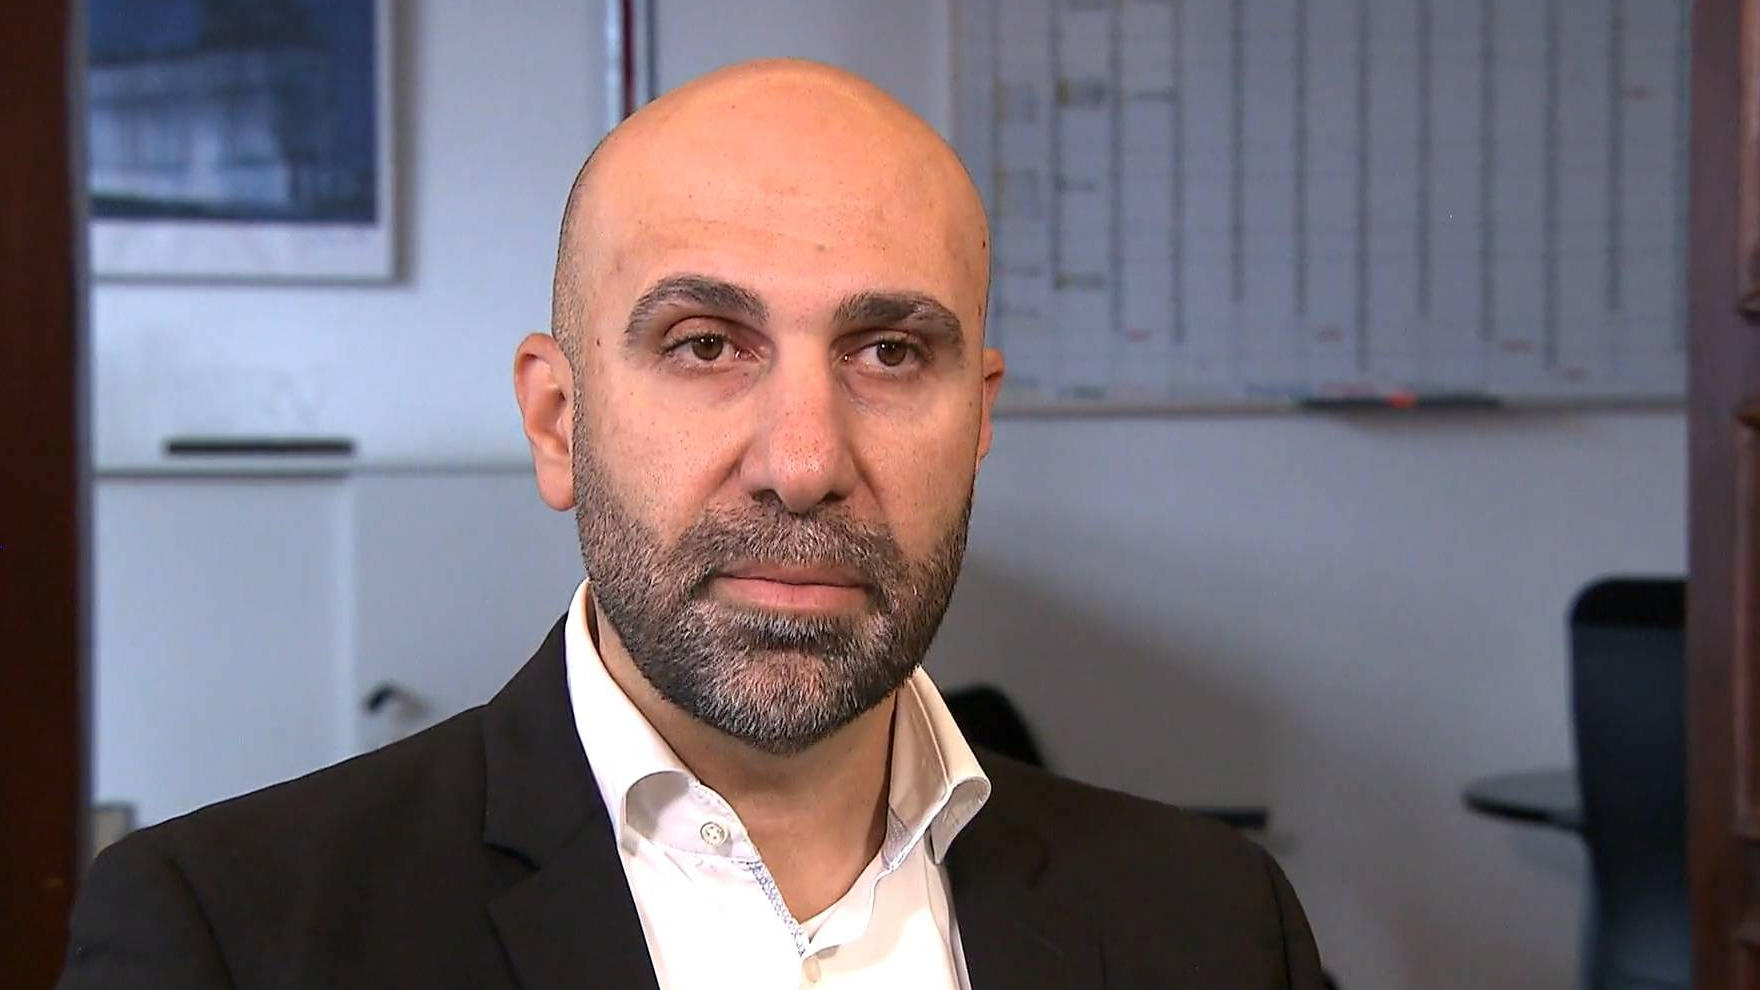 Mansour: "Da kann man nicht von Integration sprechen" Experte fordert Investitionen